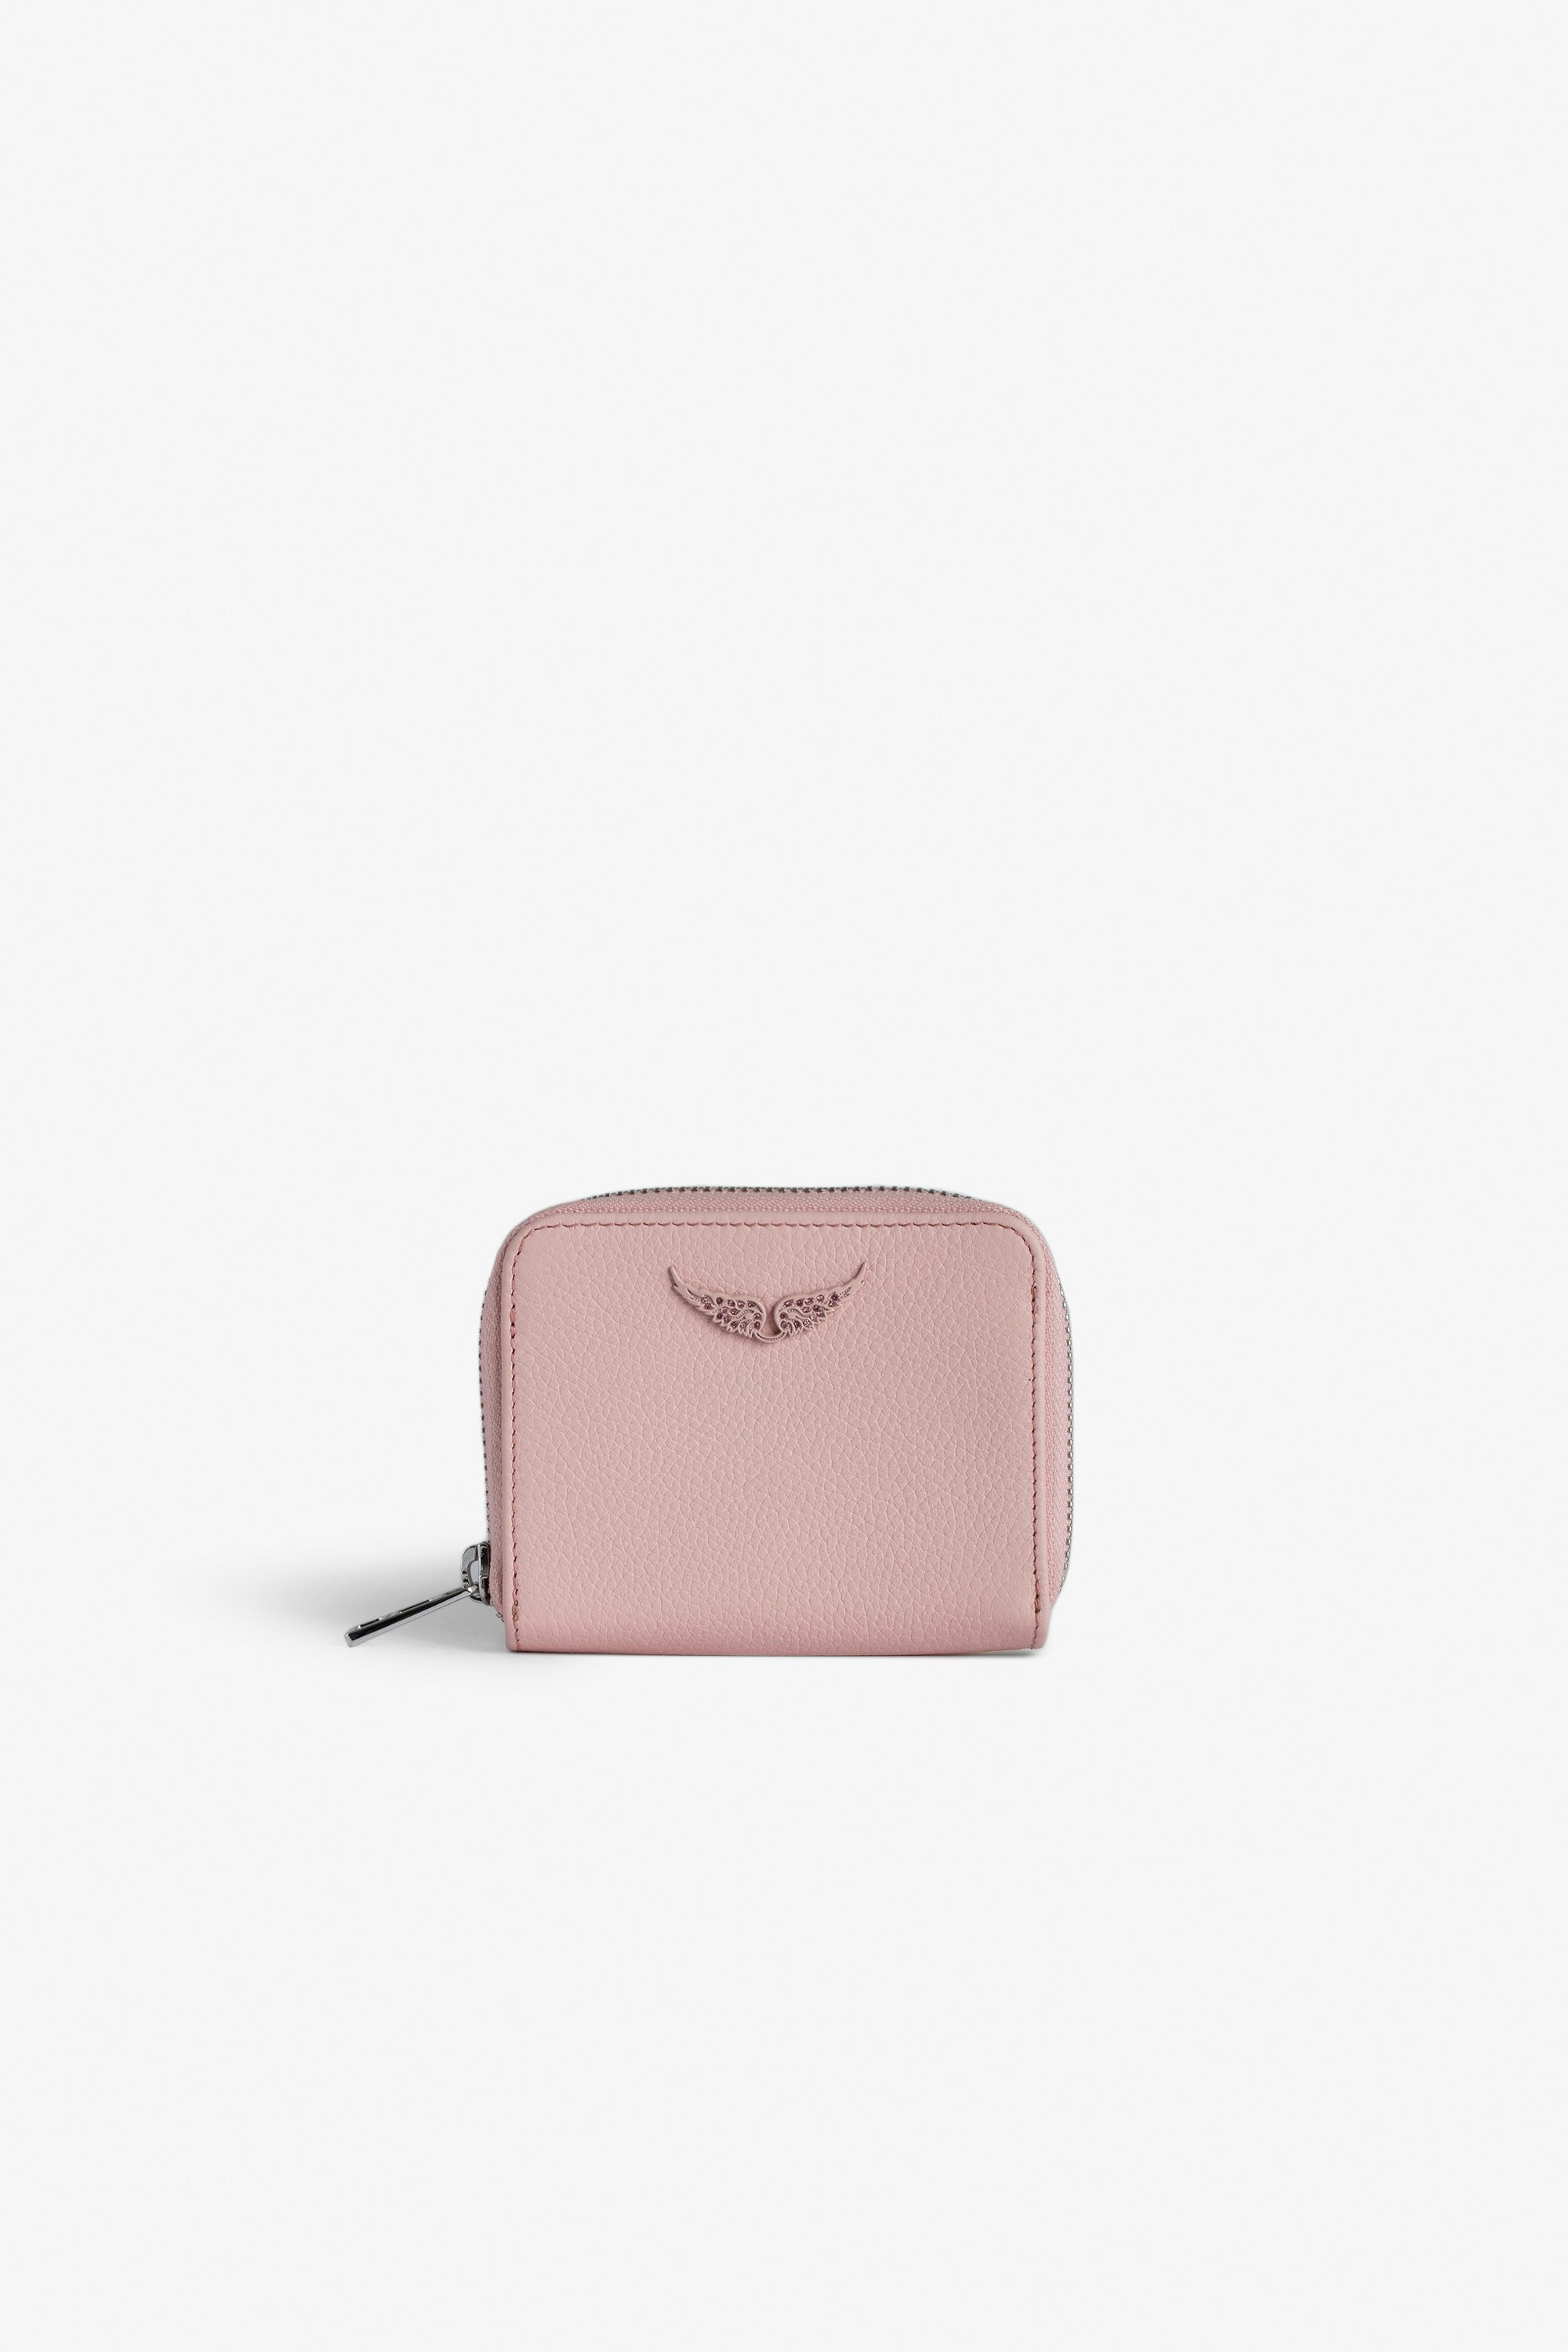 Porte-Monnaie Mini ZV - Portefeuille en cuir grainé rose à charm ailes en strass.